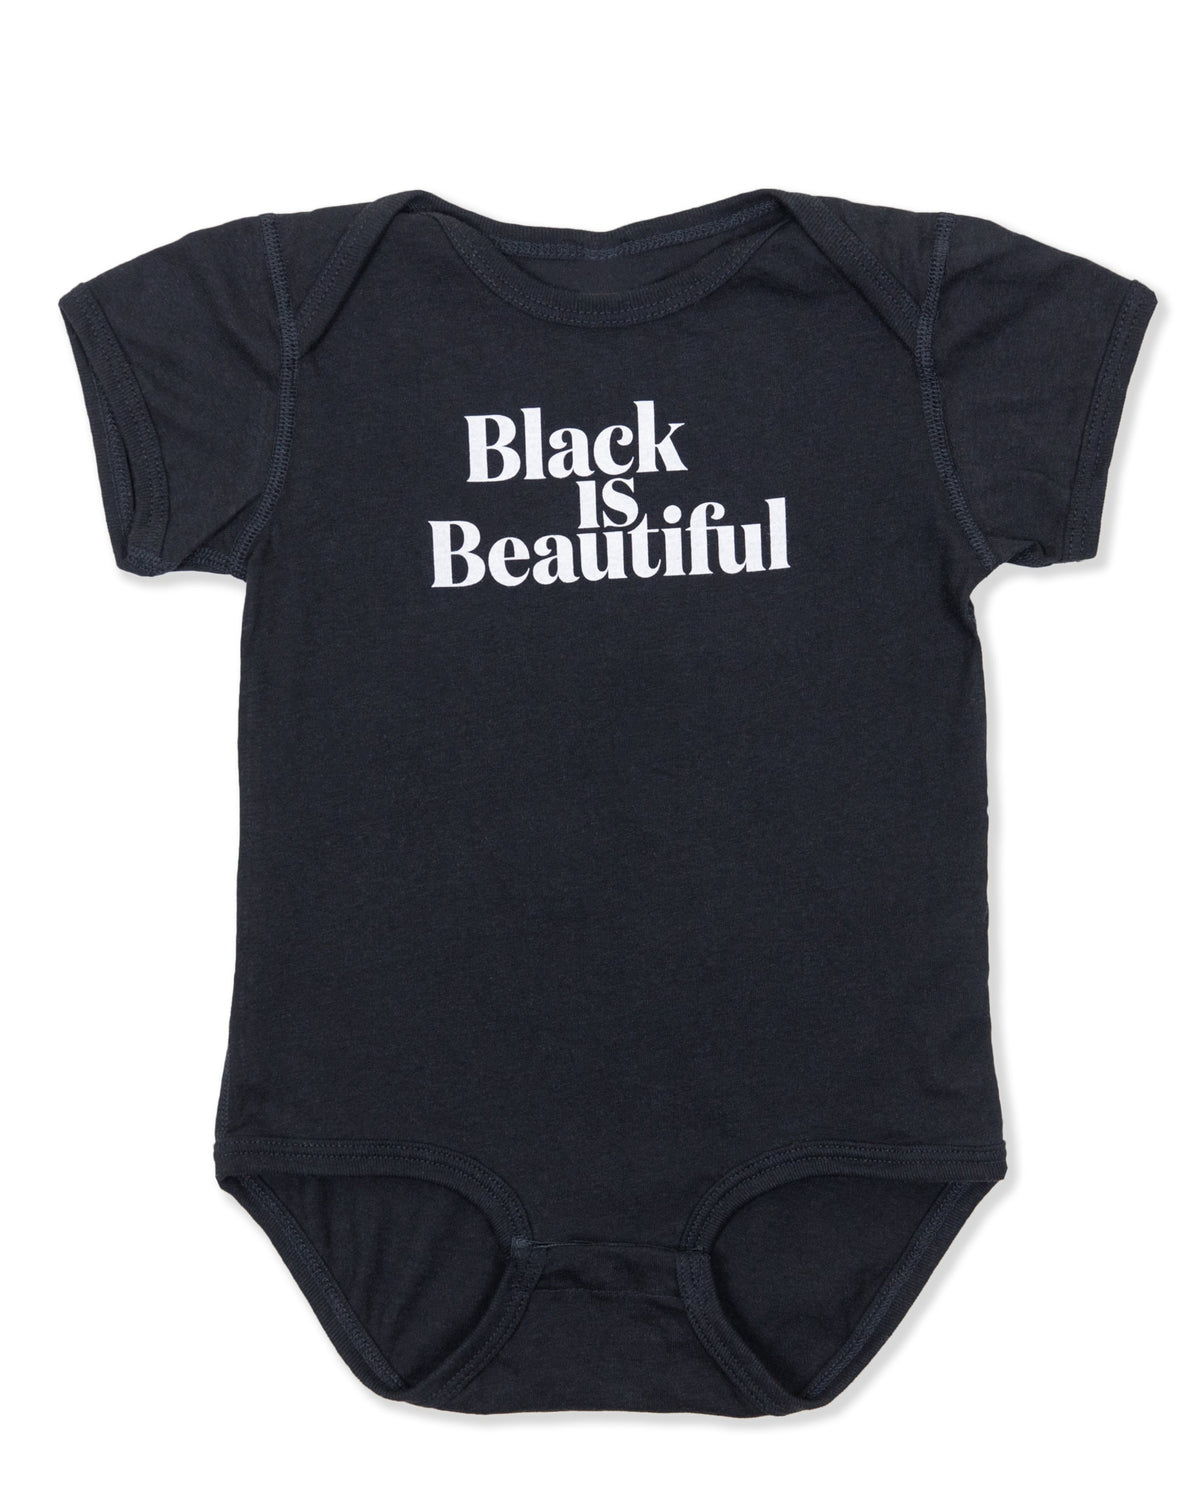 Black is Beautiful Infant Onesie